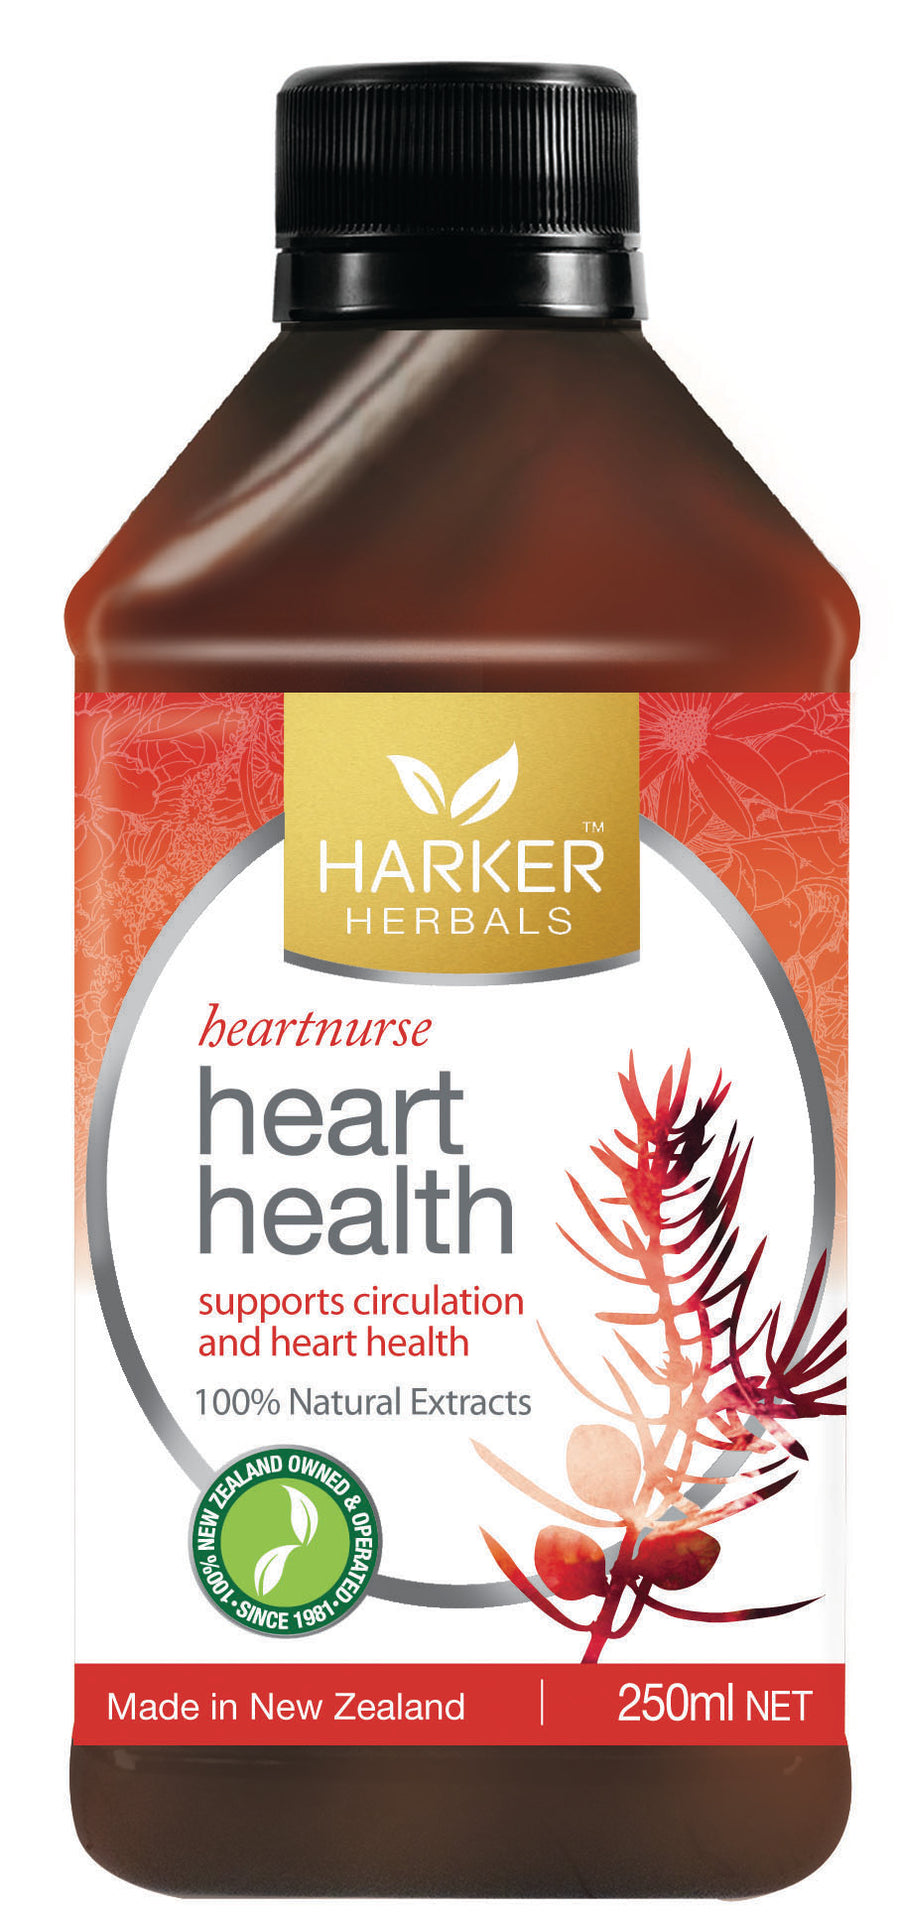 Harker Herbals Heart Health Tonic